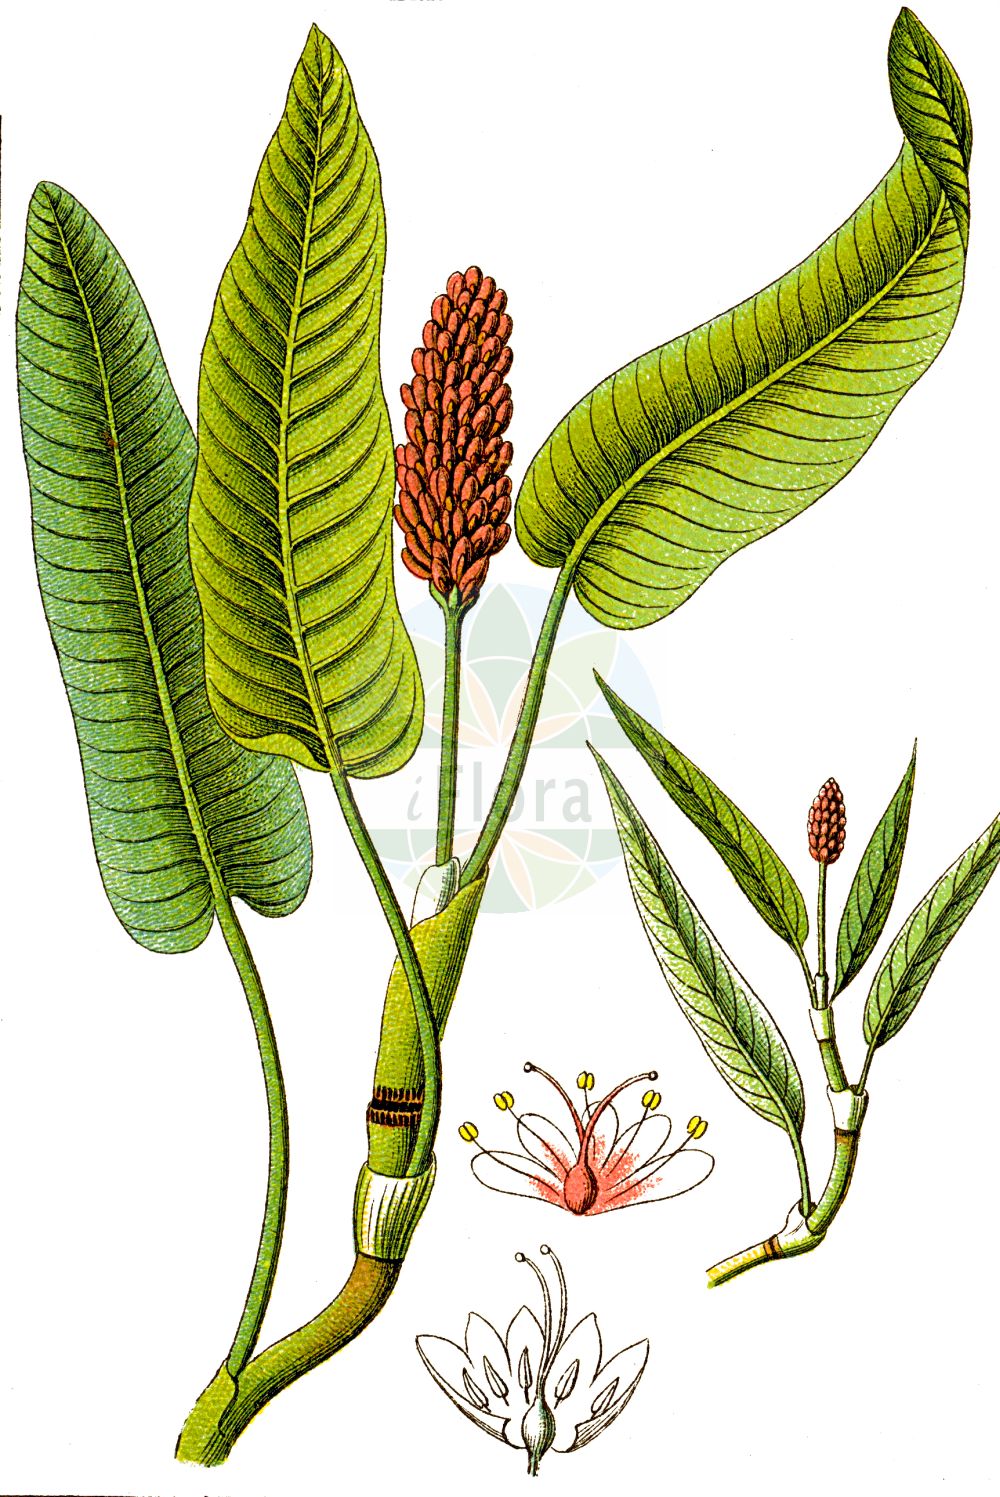 Historische Abbildung von Persicaria amphibia (Wasser-Knöterich - Amphibious Bistort). Das Bild zeigt Blatt, Bluete, Frucht und Same. ---- Historical Drawing of Persicaria amphibia (Wasser-Knöterich - Amphibious Bistort). The image is showing leaf, flower, fruit and seed.(Persicaria amphibia,Wasser-Knöterich,Amphibious Bistort,Persicaria amphibia,Polygonum amphibium,Polygonum amphibium var. terrestre,Wasser-Knoeterich,Amphibious Bistort,Water Knotweed,Devil's Shoestring,Perennial Knotgrass,Shoestringweed,Swamp Smartweed,Water Smartweed,Willow Grass,Persicaria,Knöterich,Knotgrass,Polygonaceae,Knöterichgewächse,Knotgrass family,Blatt,Bluete,Frucht,Same,leaf,flower,fruit,seed,Sturm (1796f))